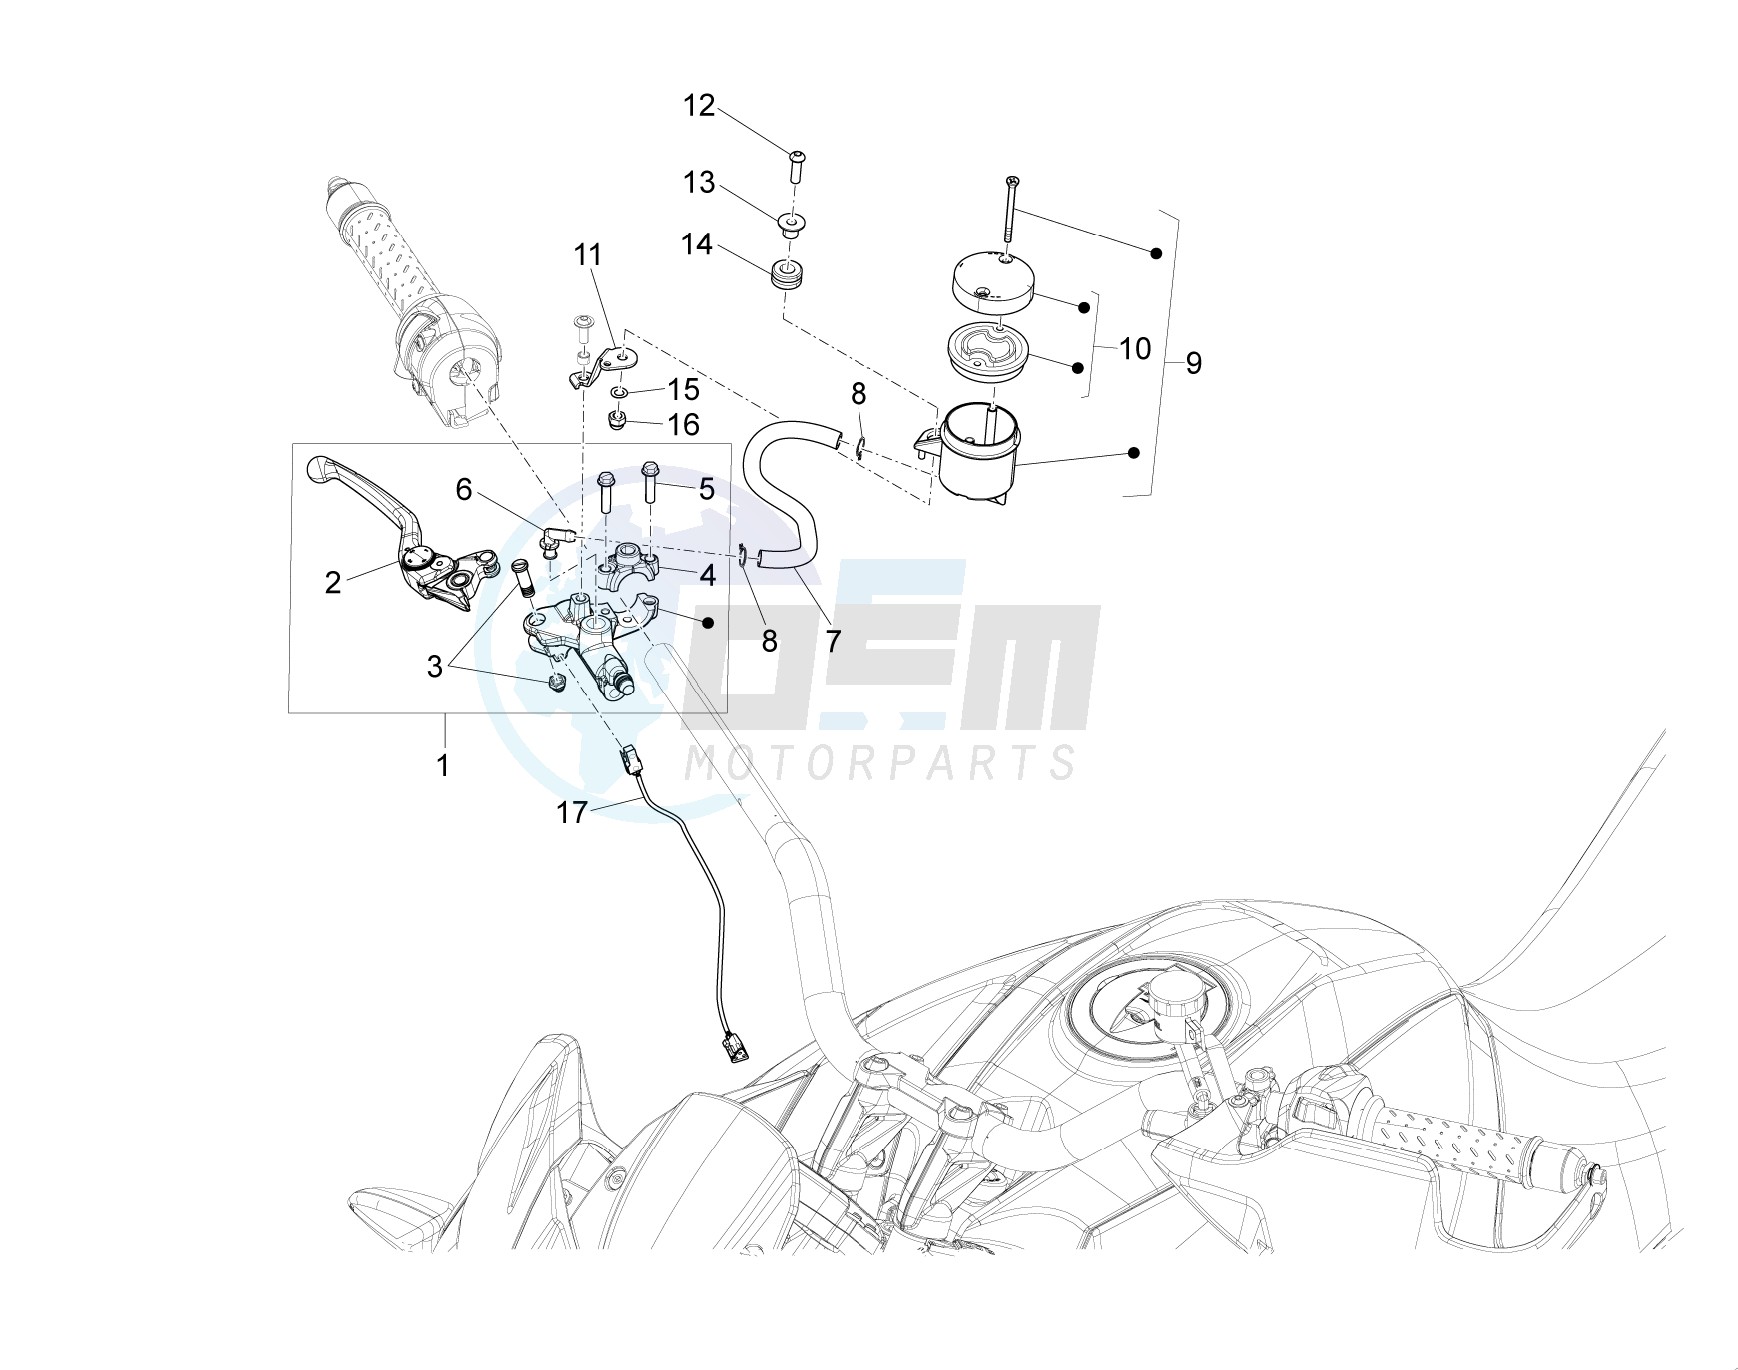 Front master brake cilinder blueprint